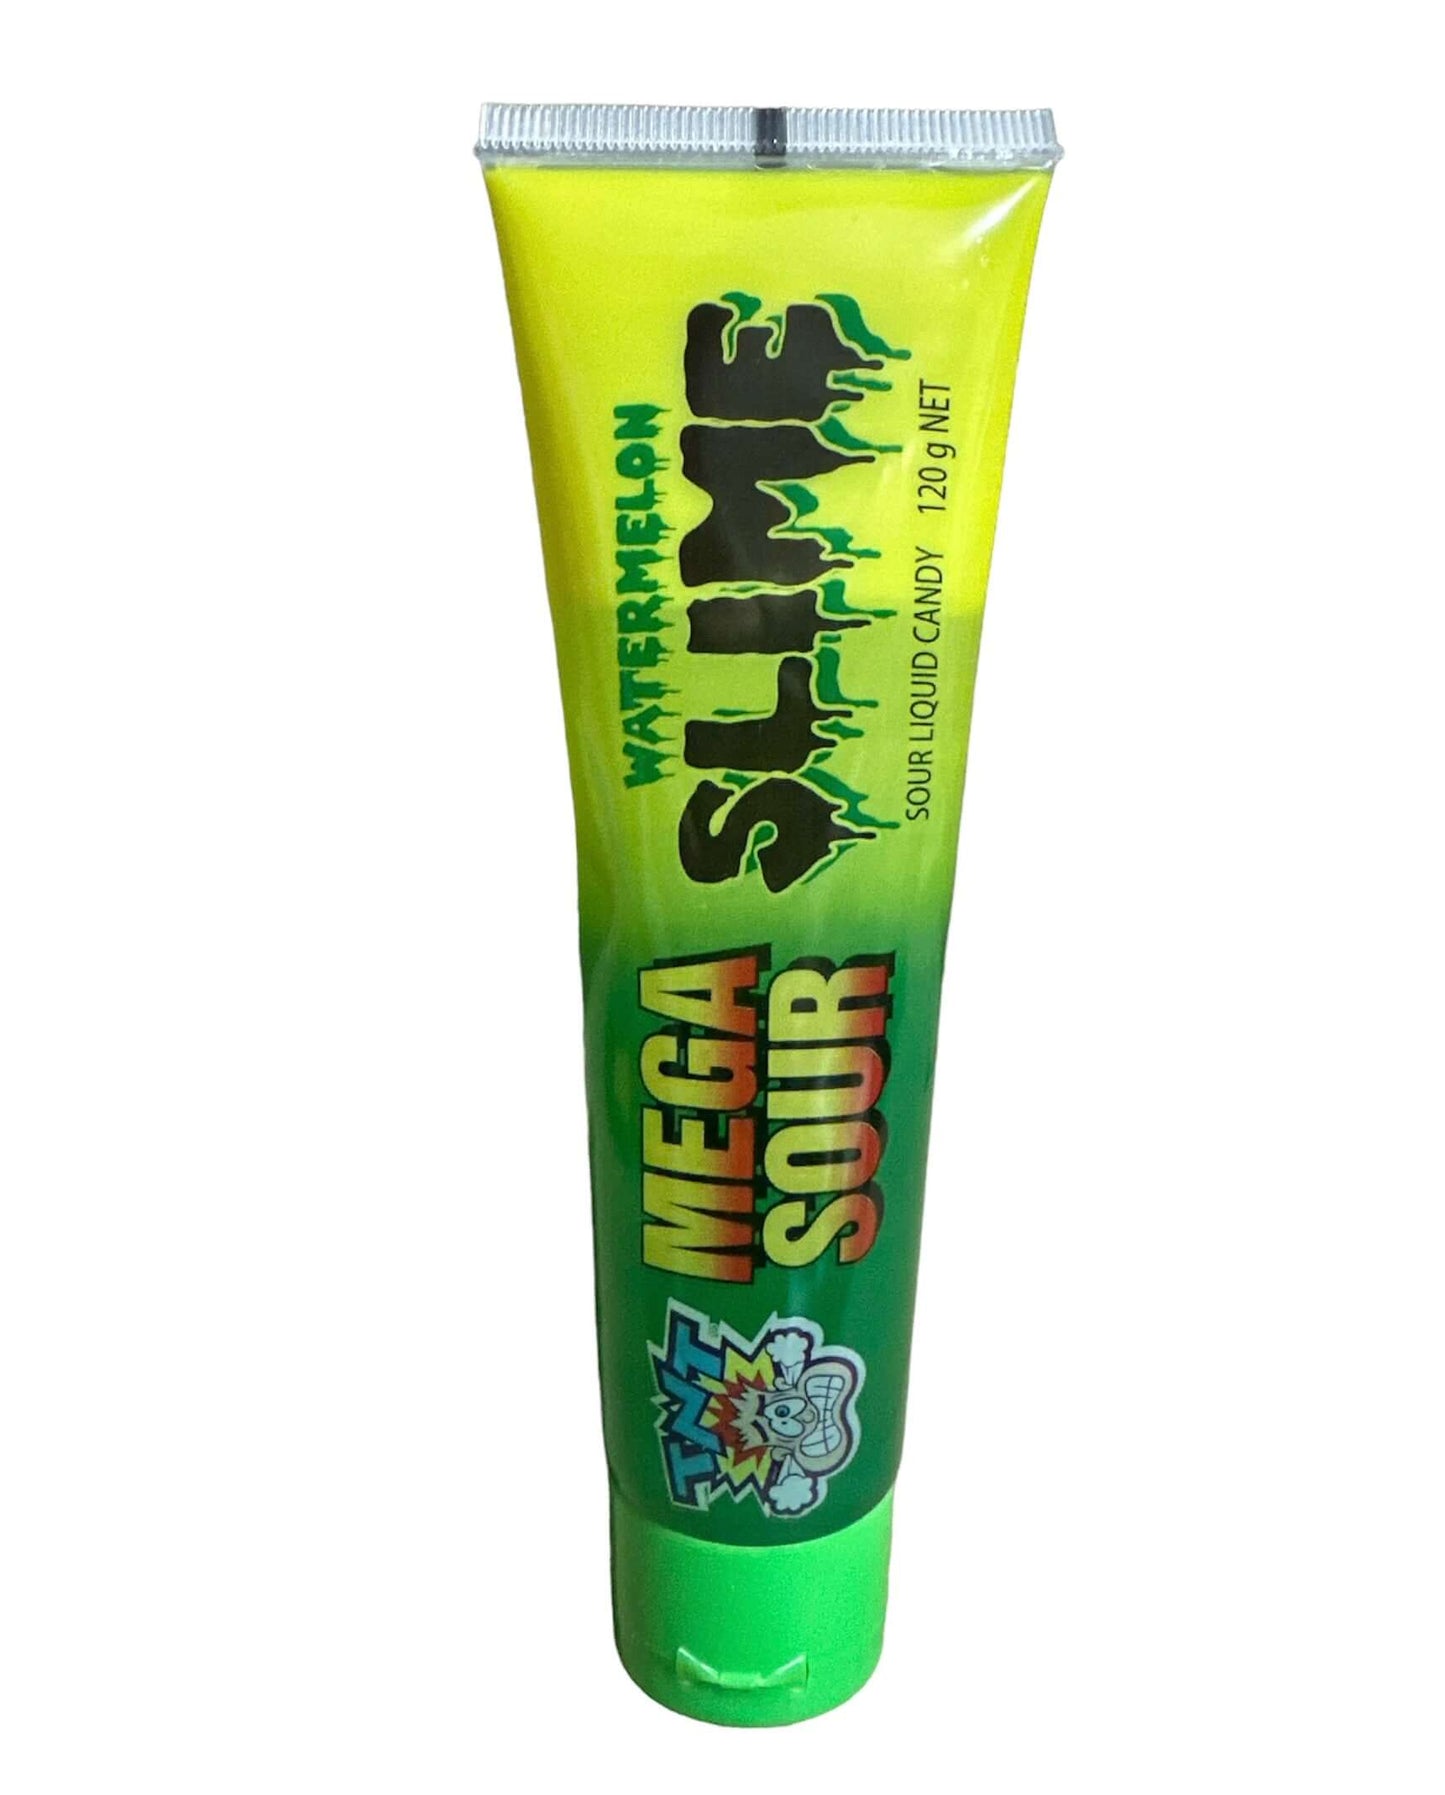 TNT Mega Sour Slime